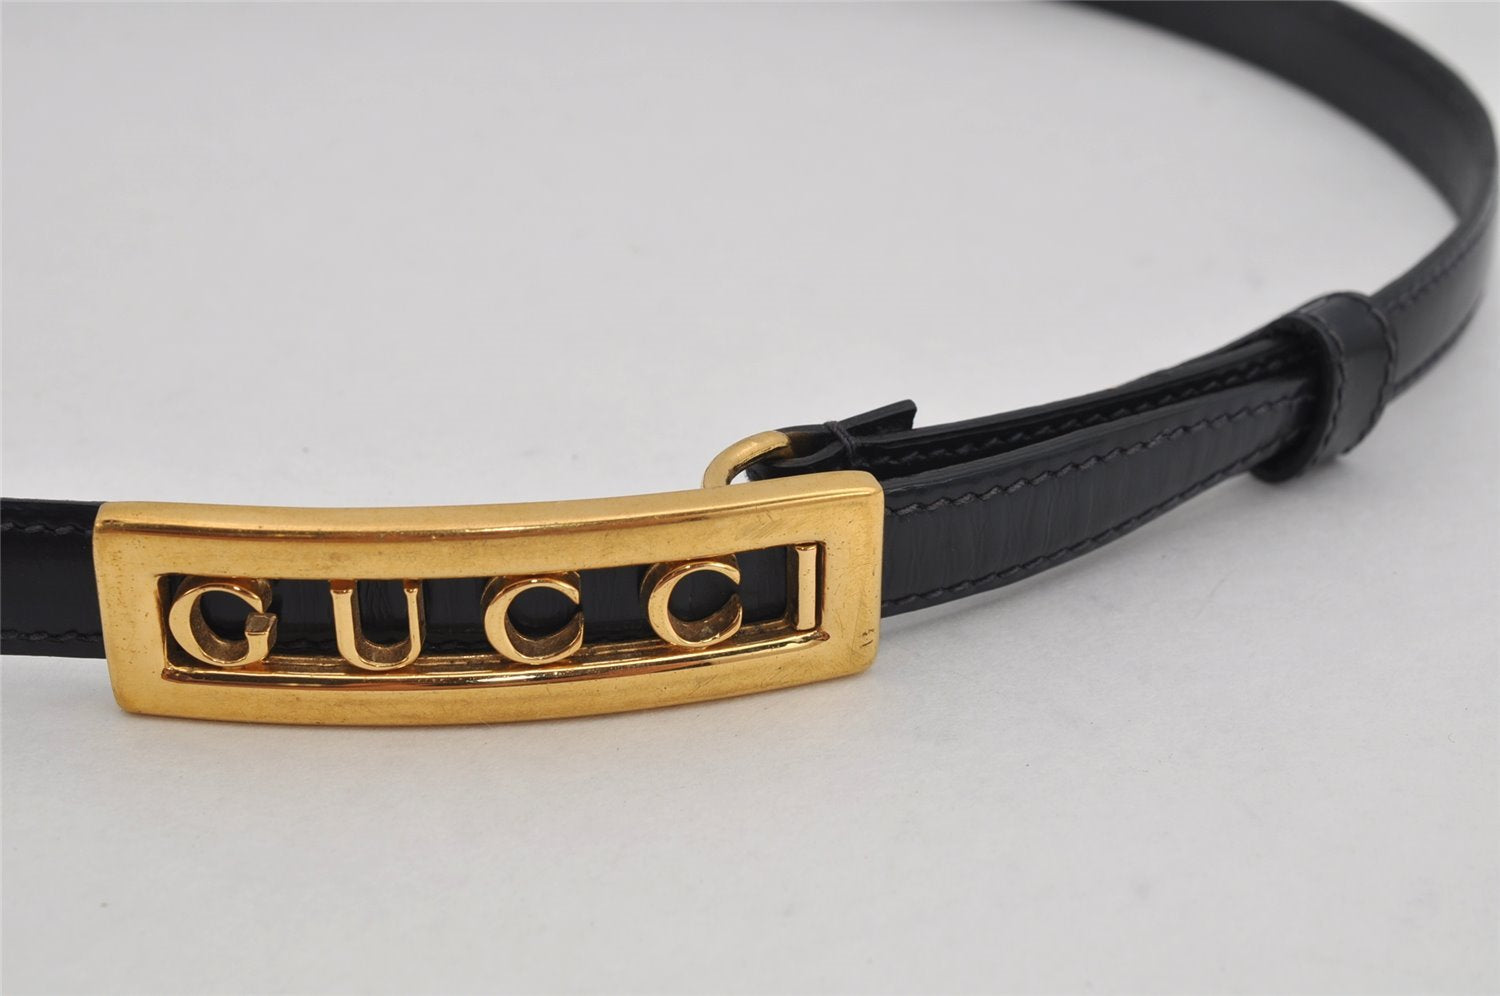 Authentic GUCCI Vintage Belt Leather Size 75-80cm 29.5-31.5